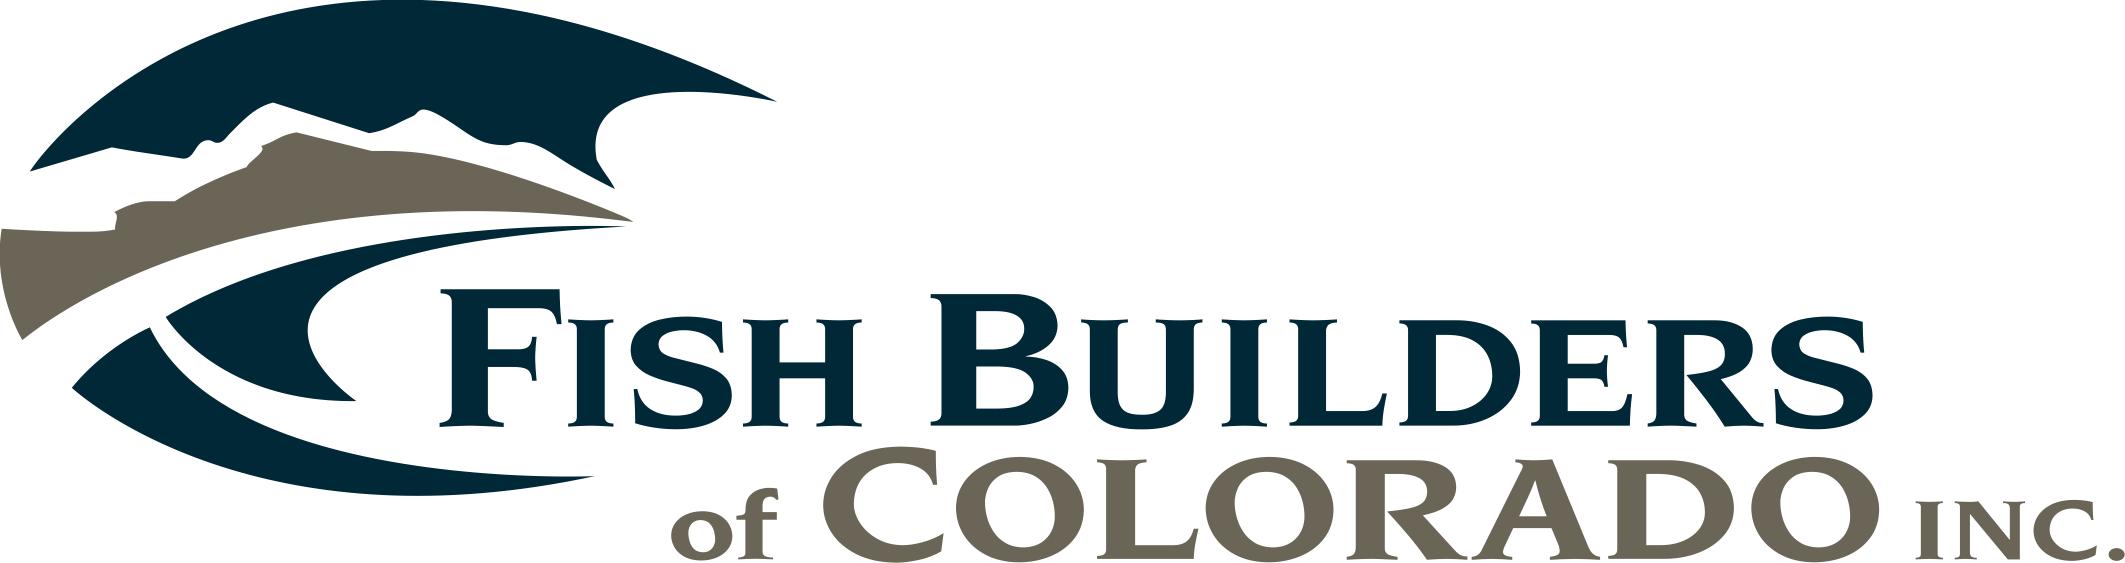 Fish Builders of Colorado, Inc. company logo